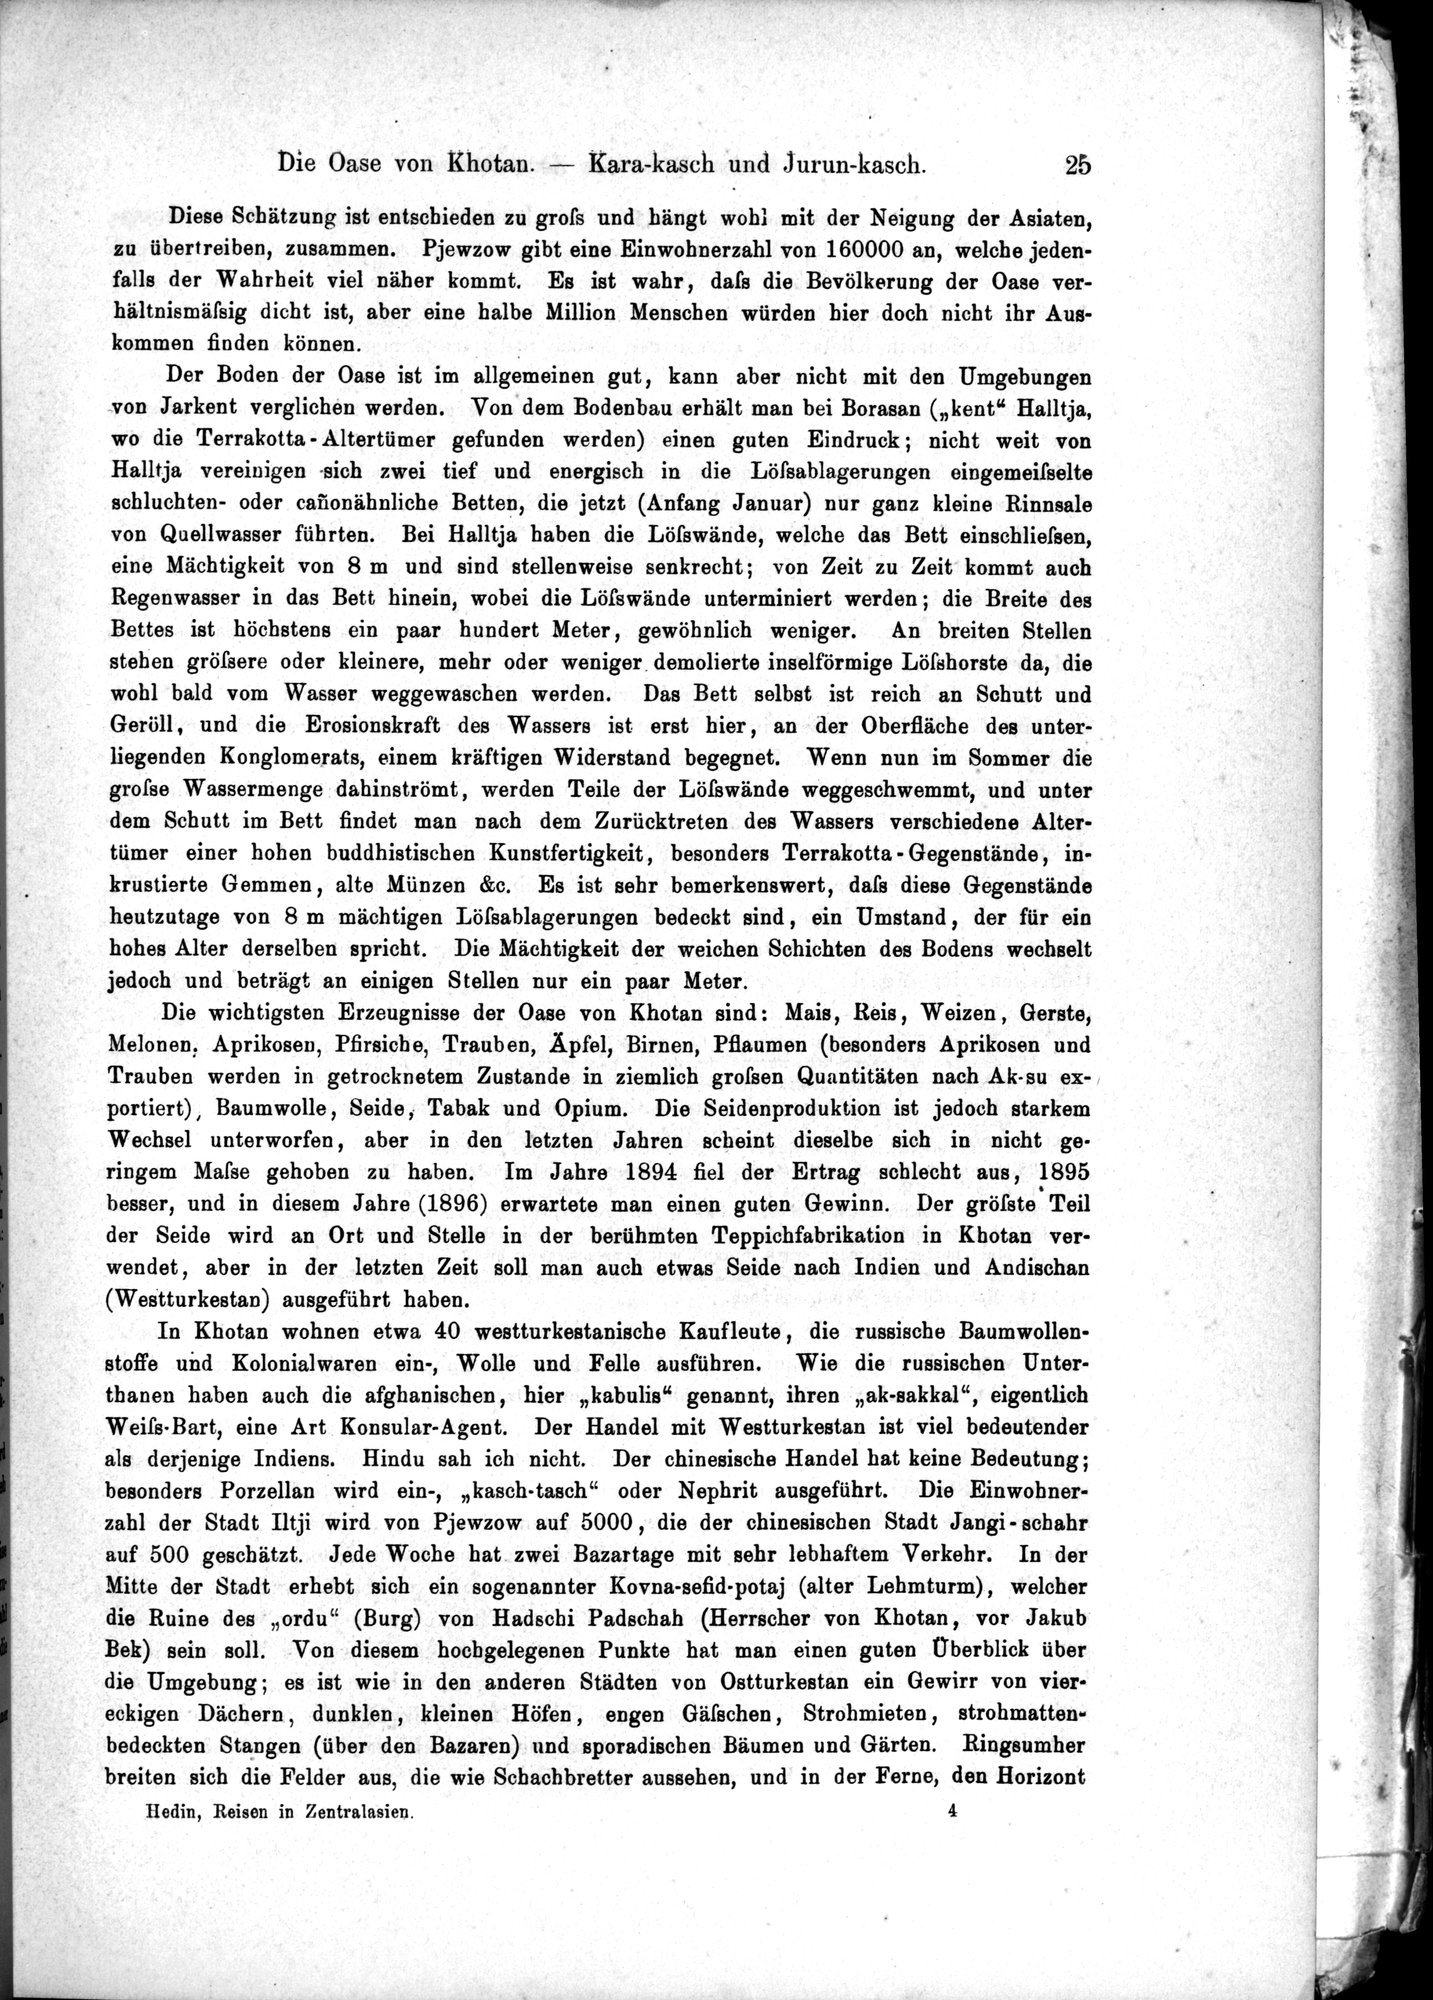 Die Geographische-Wissenschaftlichen Ergebnisse meiner Reisen in Zentralasien, 1894-1897 : vol.1 / Page 37 (Grayscale High Resolution Image)